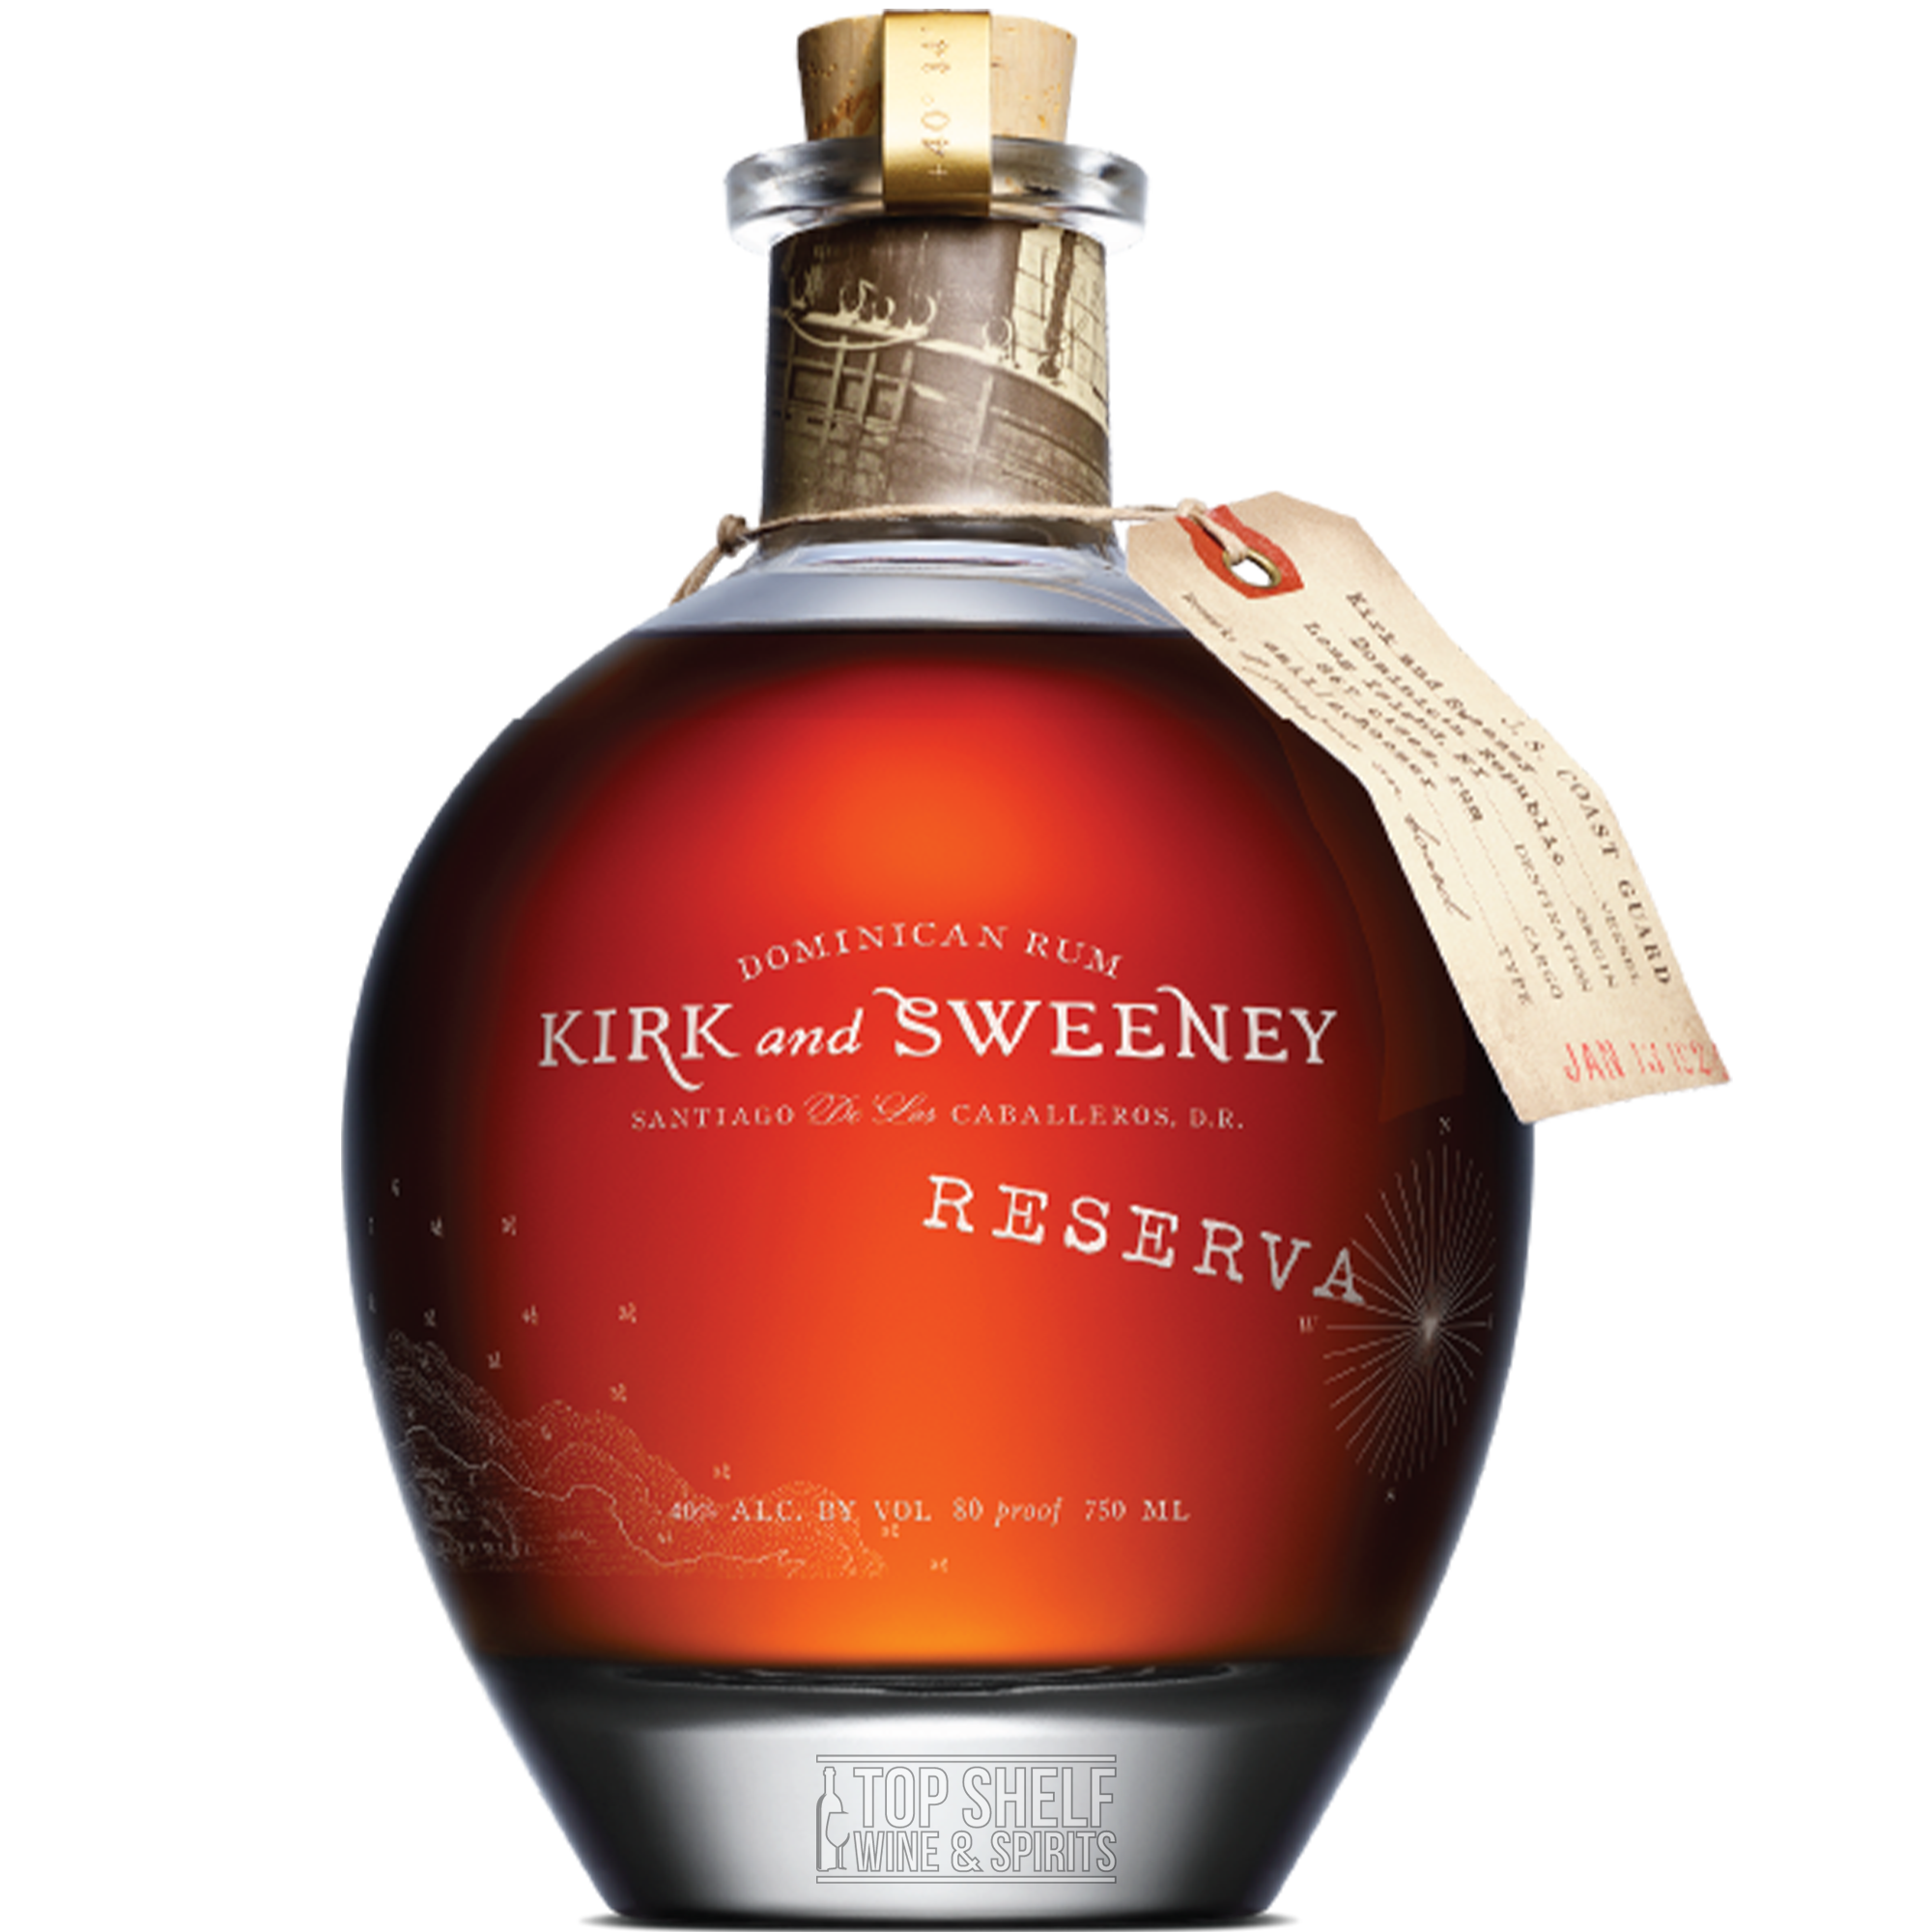 Kirk and Sweeney Reserva Dominican Rum